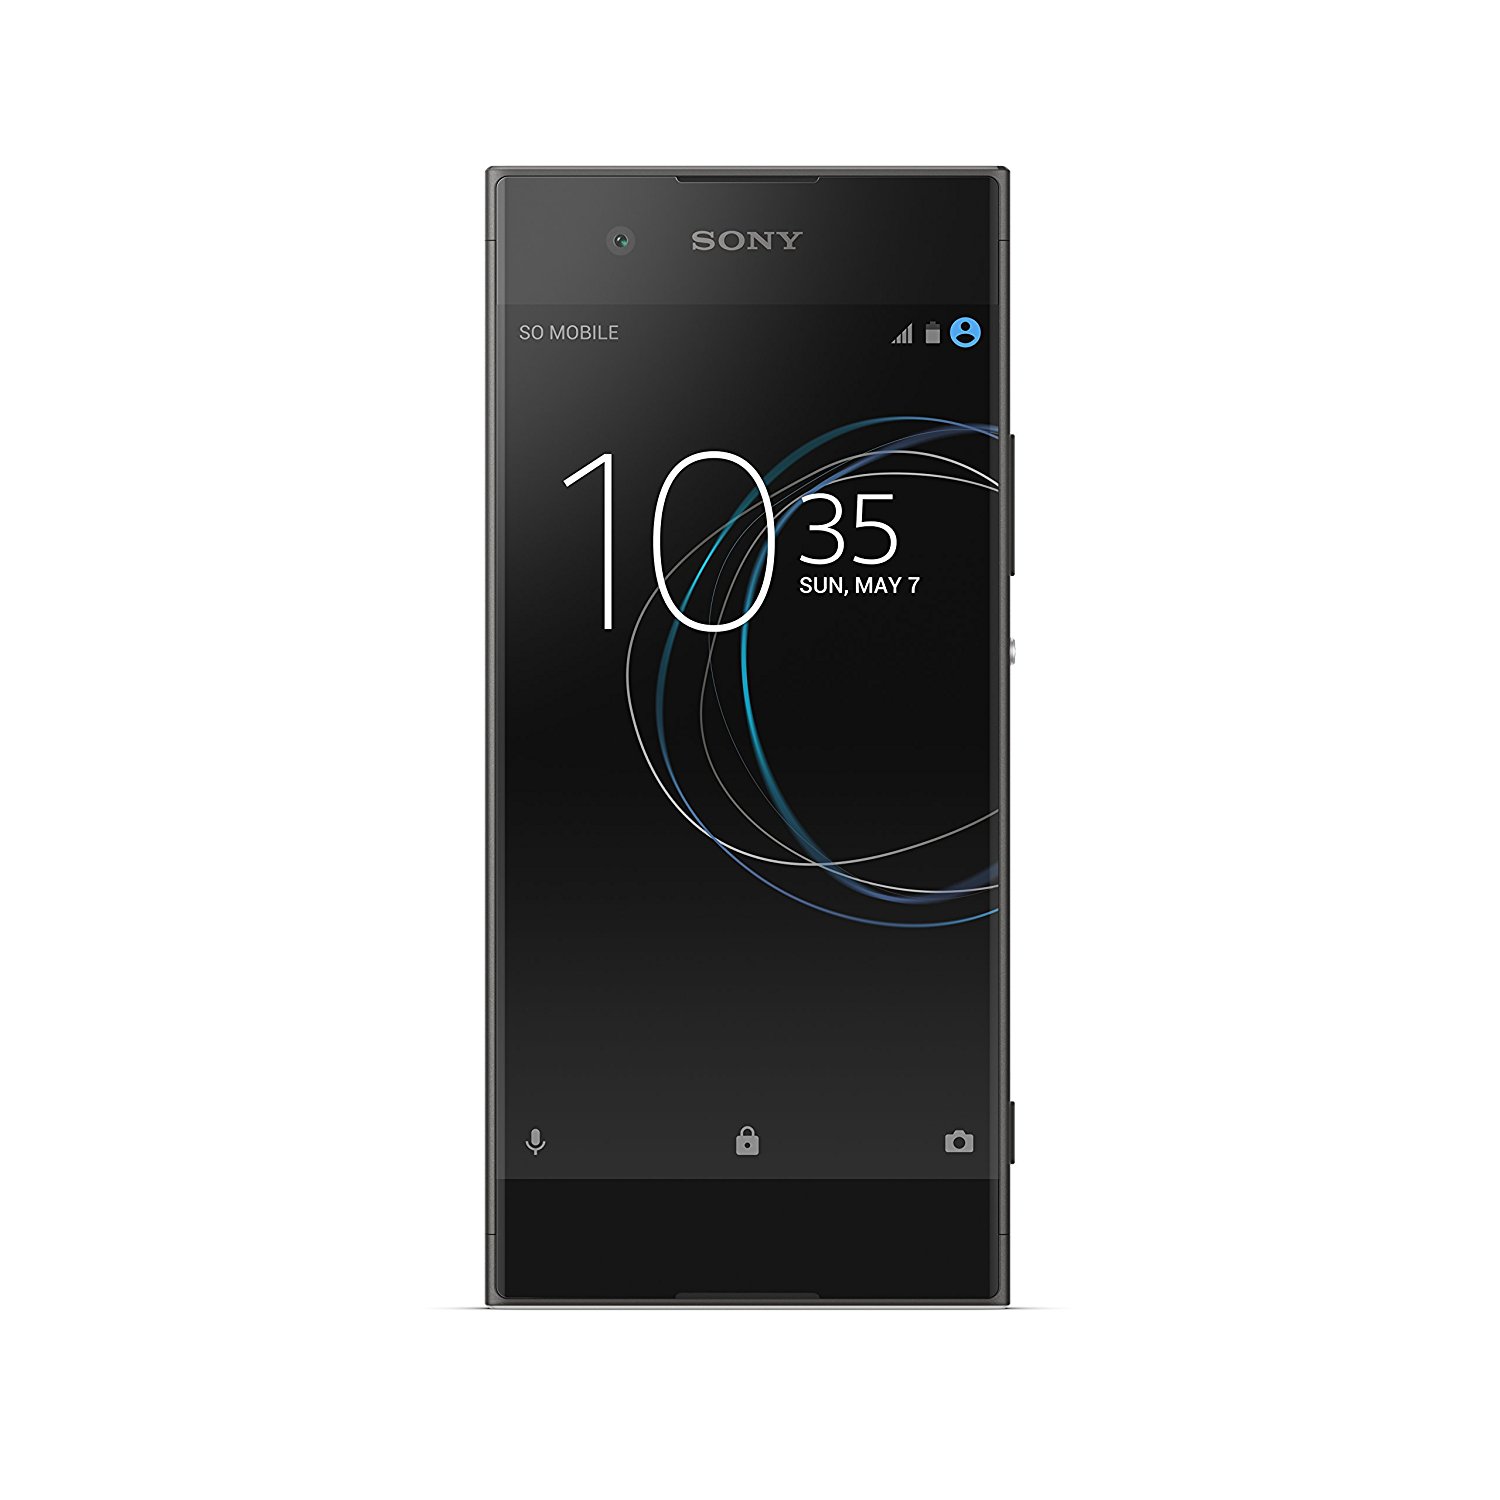  Sony Computer Entertainment सोनी एक्सपीरिया एक्सए 1 - अनलॉक्ड स्मार्टफोन - 32 जीबी - ब्लैक (यूएस...